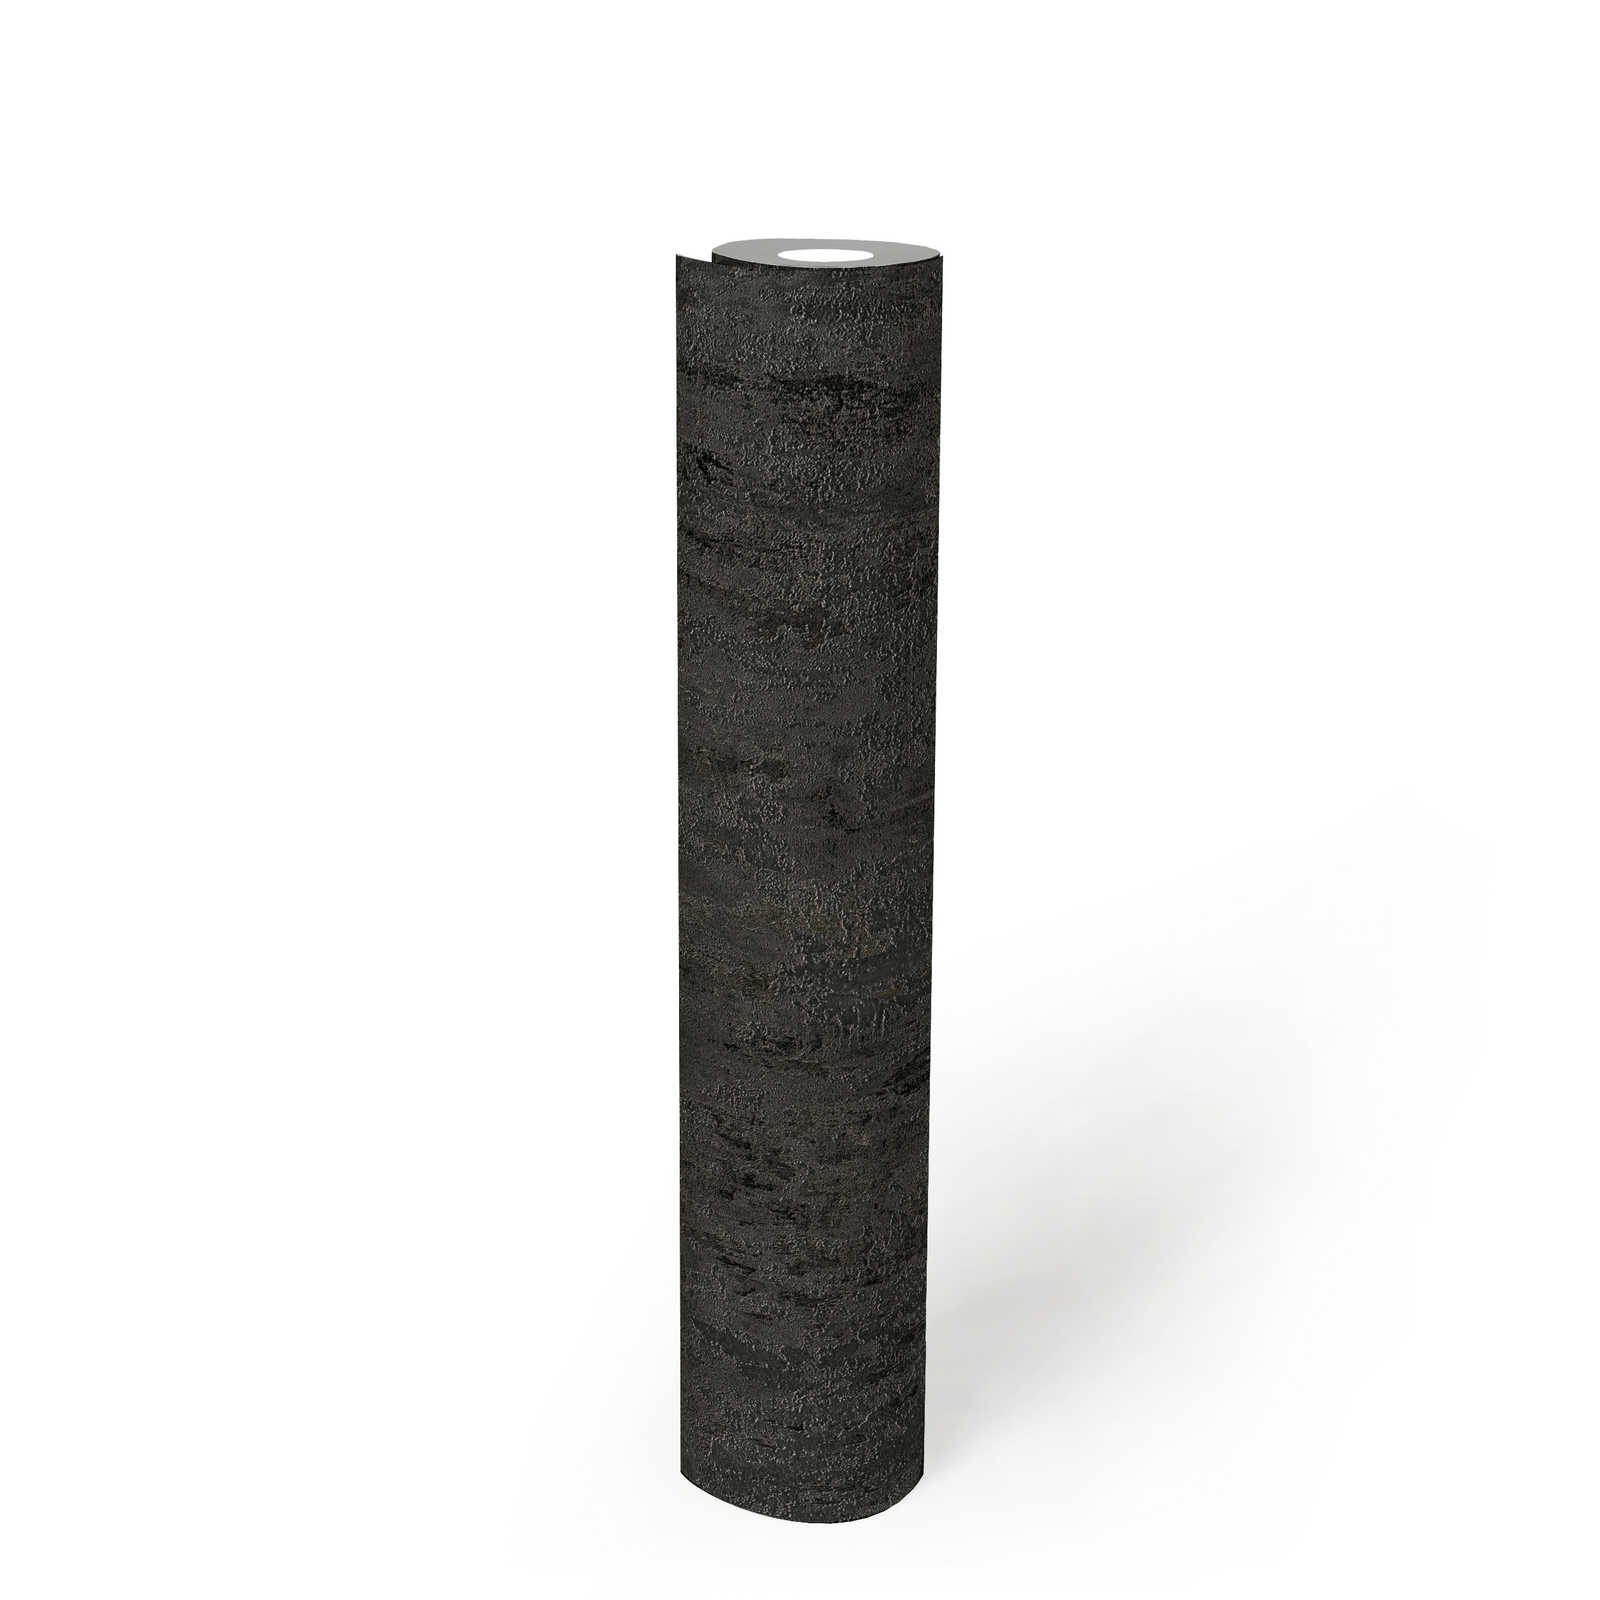             Papel pintado rústico con textura metálica aspecto antracita - negro, plata, gris
        